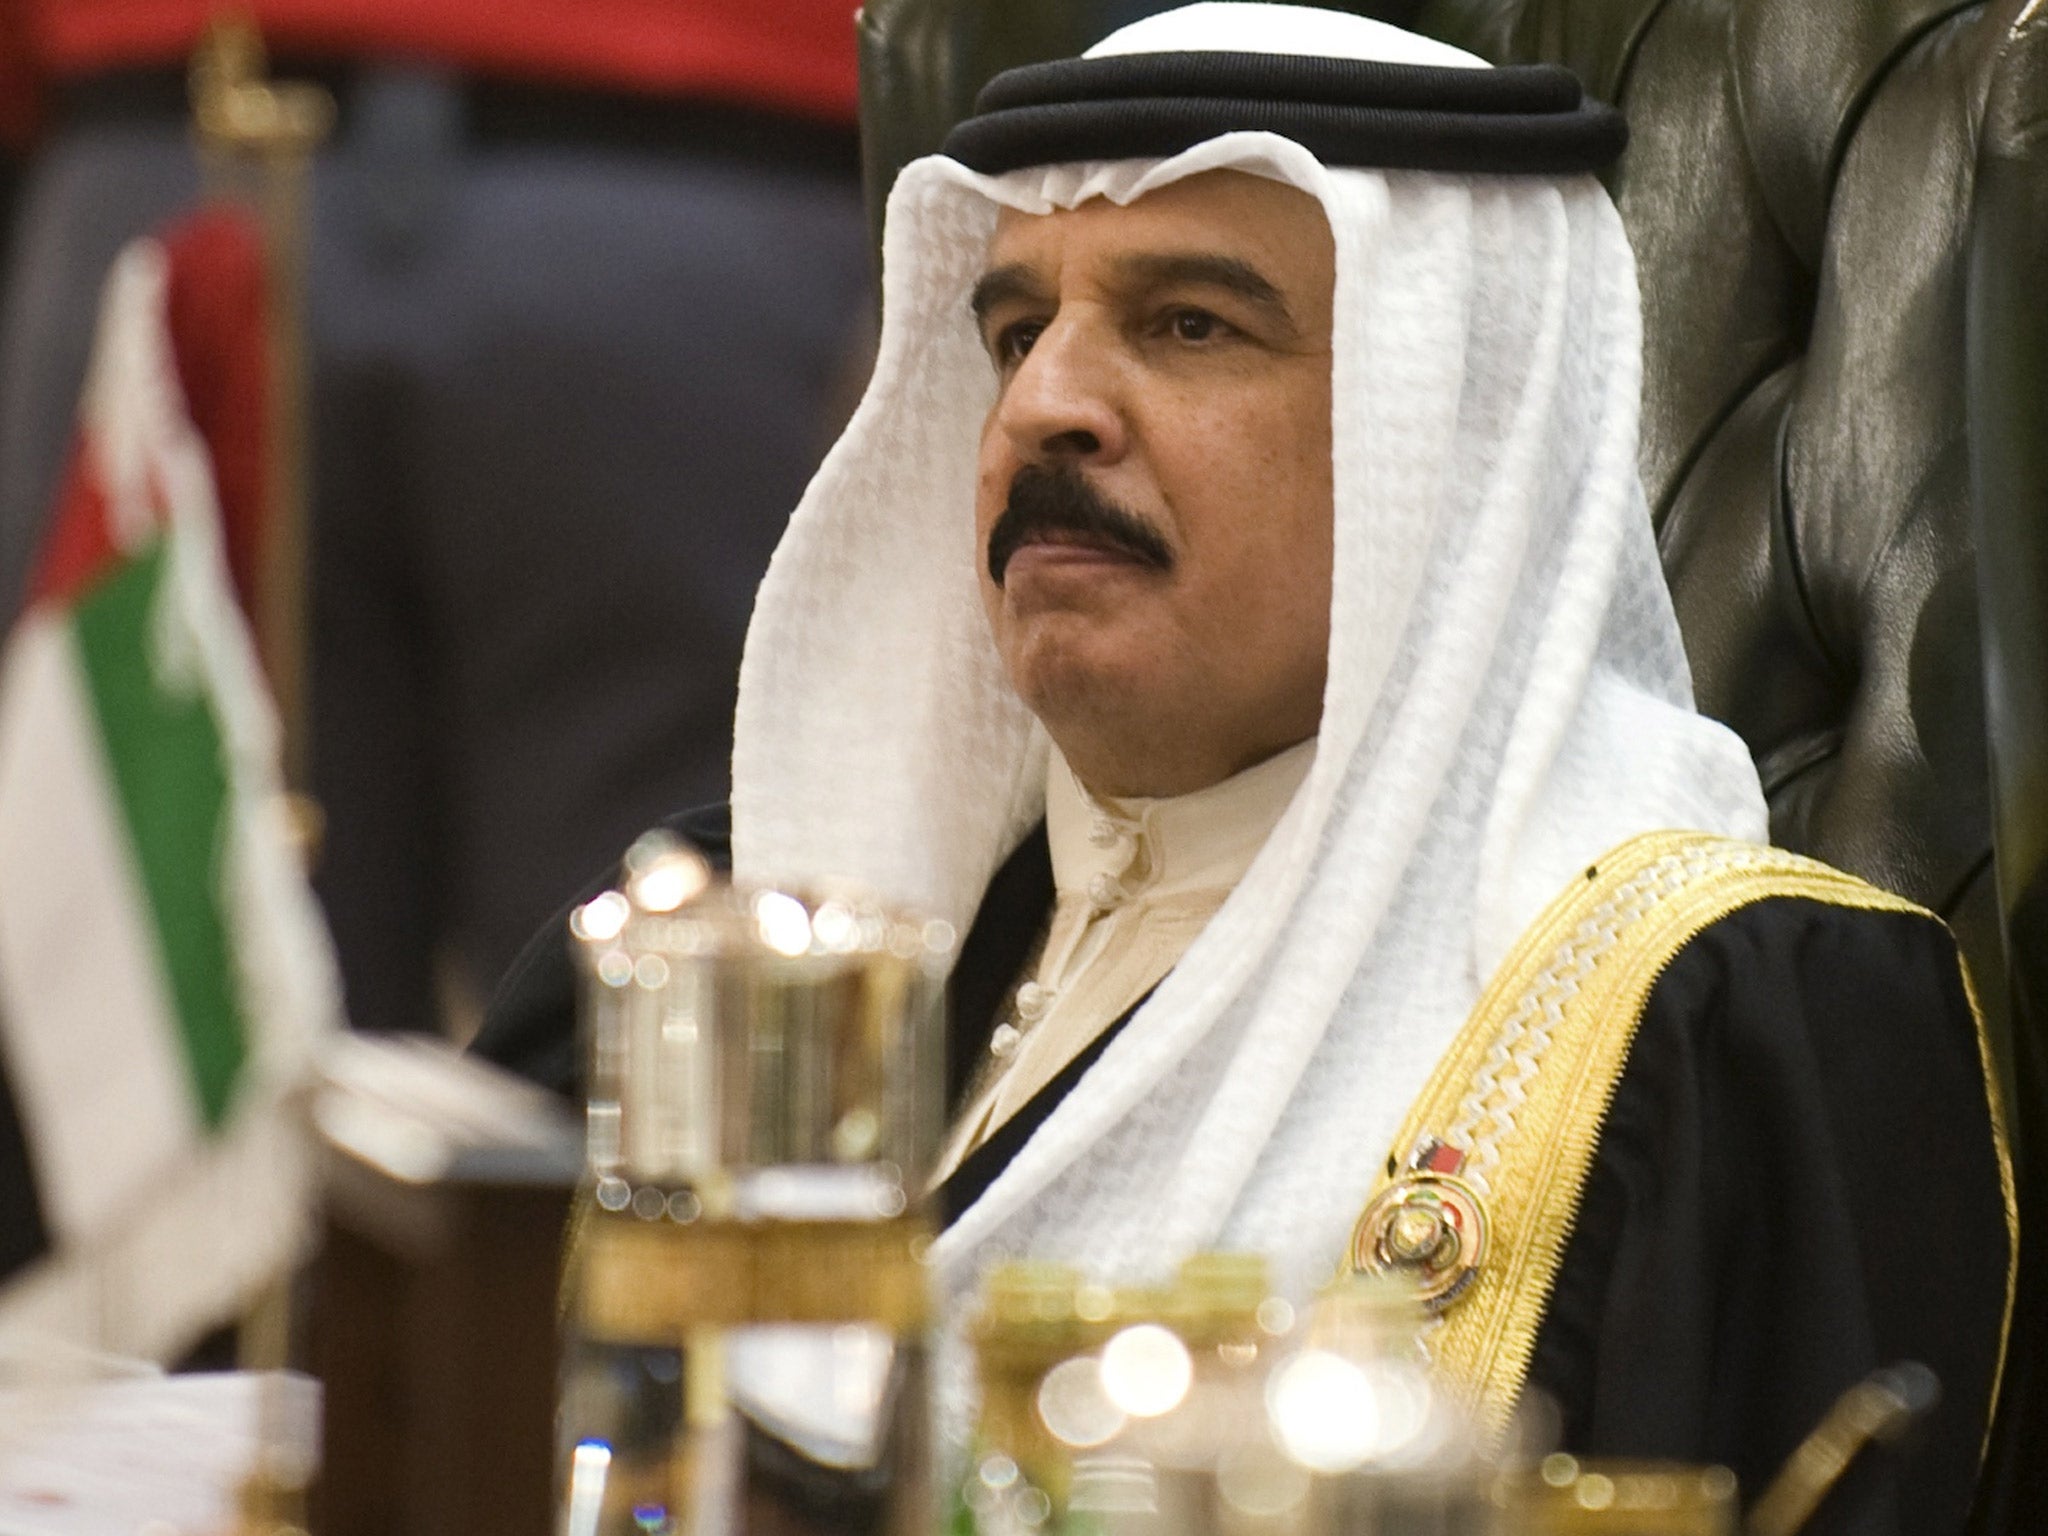 King Hamad bin Isa al-Khalifa is increasingly sidelined